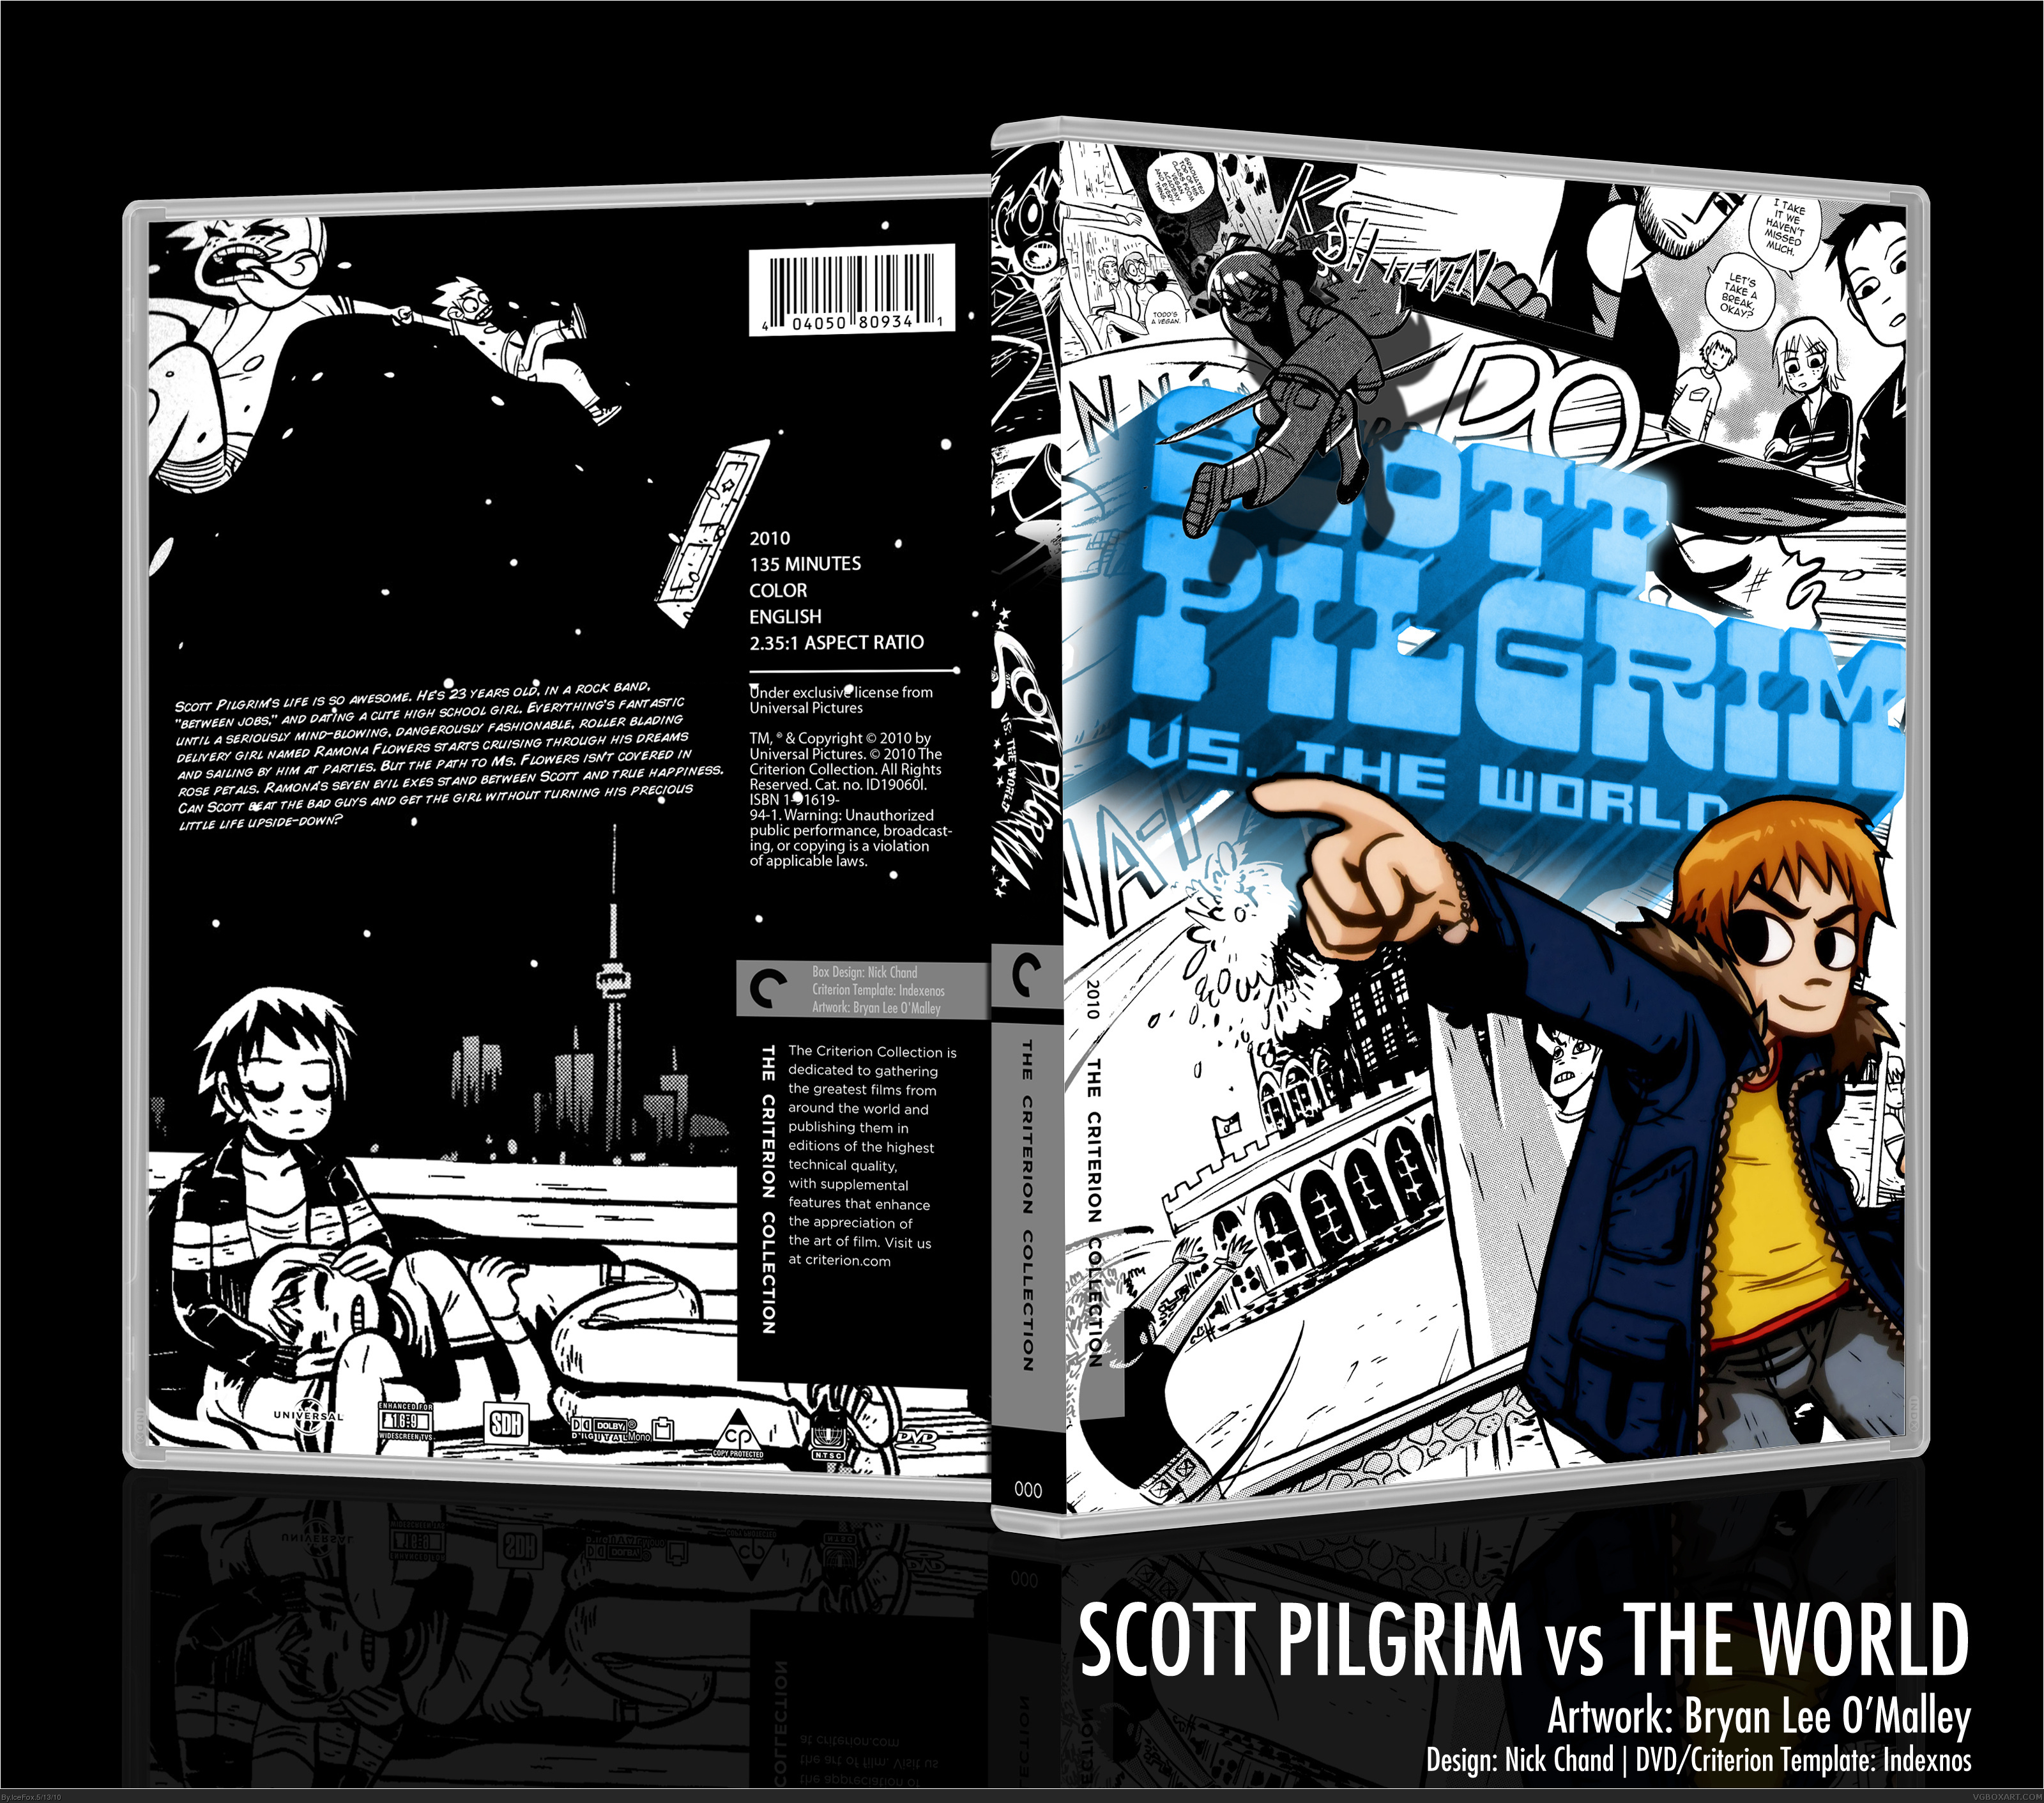 Scott Pilgrim vs The World box cover